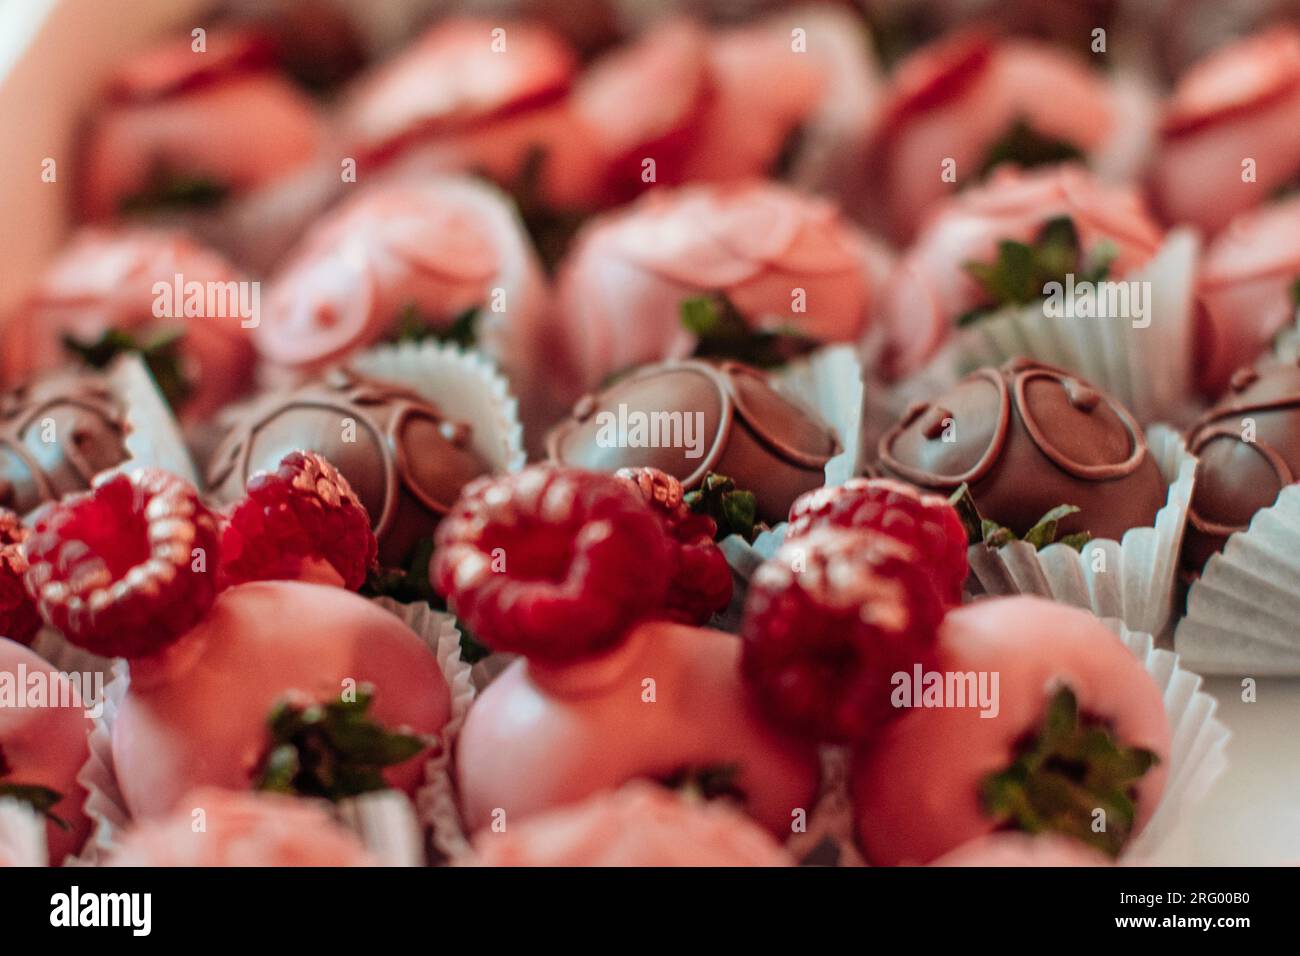 Dettagli di fragole ricoperte di cioccolato rosa. Collezione di caramelle dolci. Gustoso set per le vacanze Foto Stock